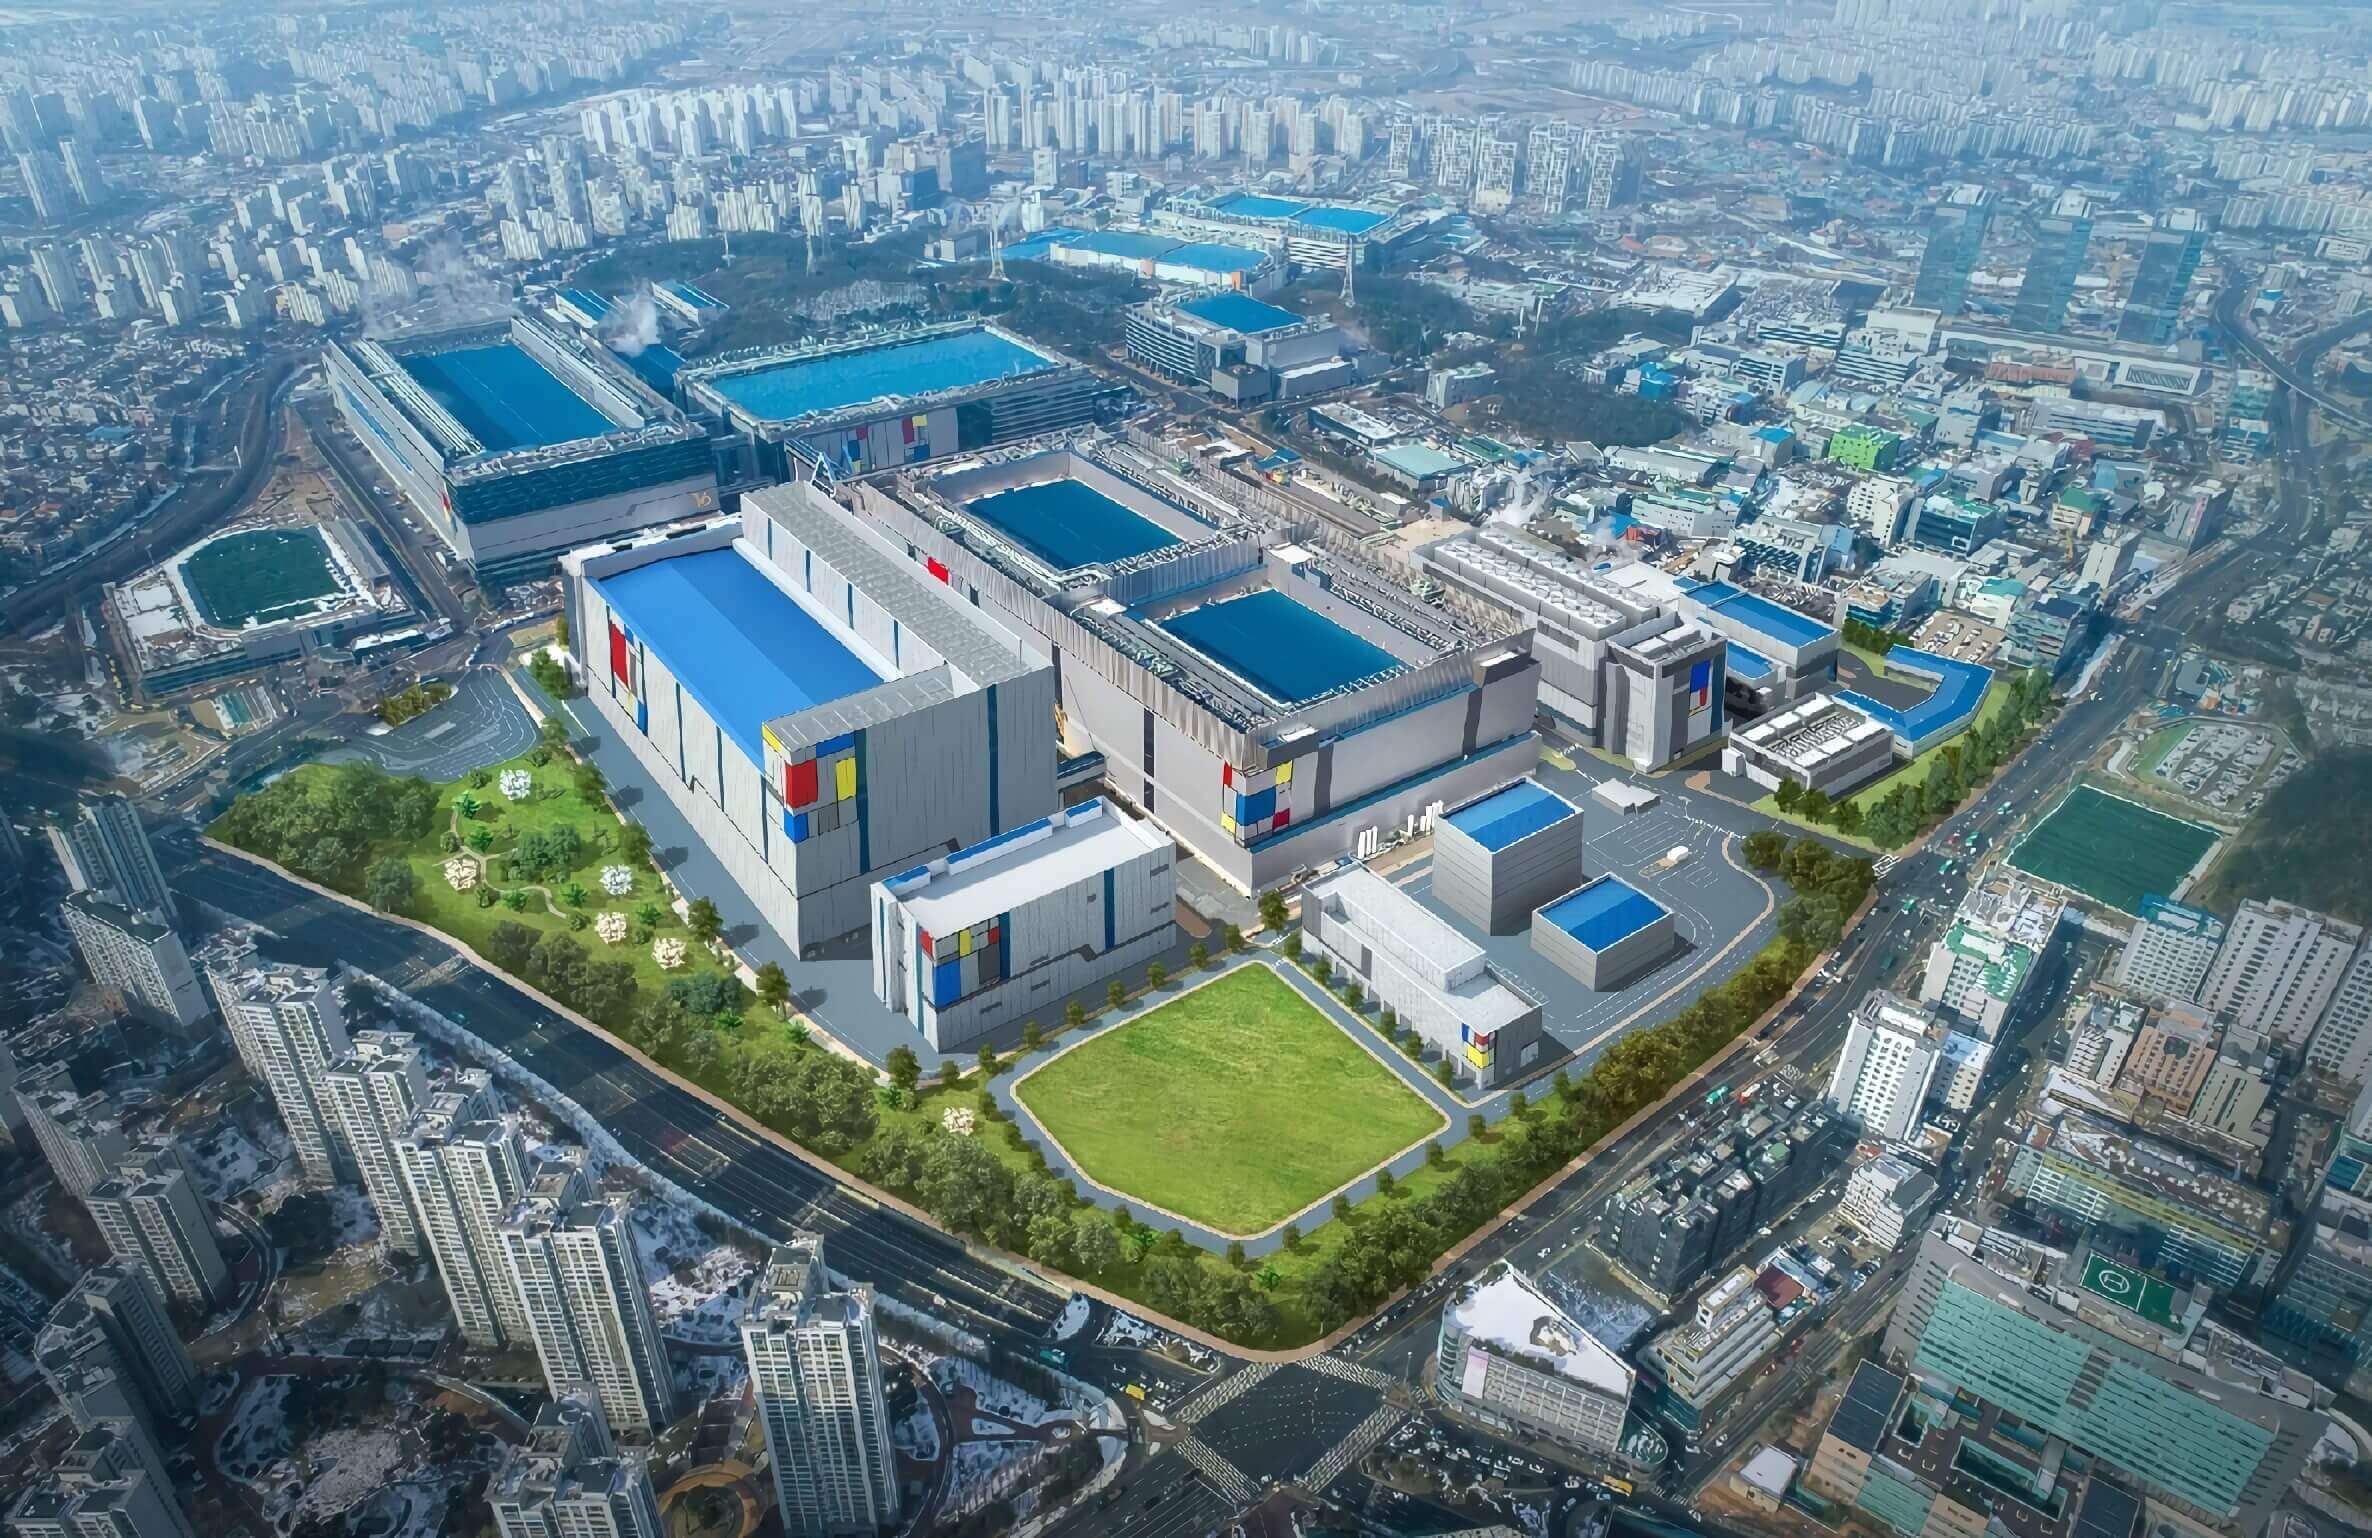 390 milliárd forintból bővül a Samsung gödi akkumulátorgyártó üzeme